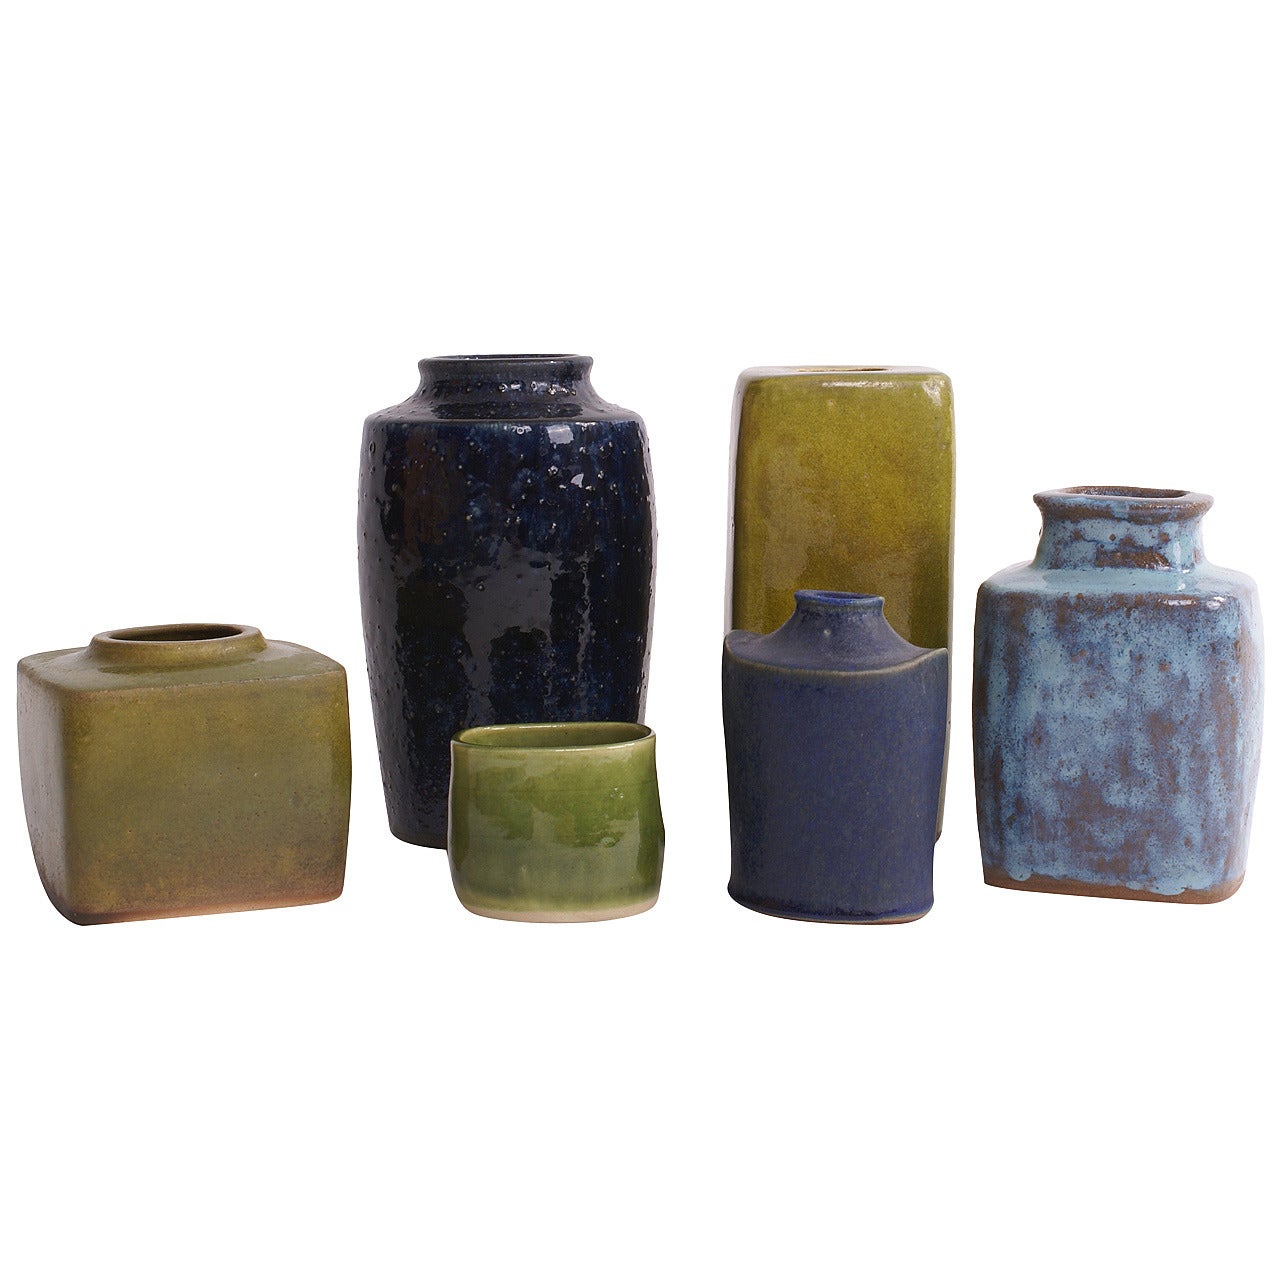 Christian Poulsen Collection of Six Unique Studio Vases